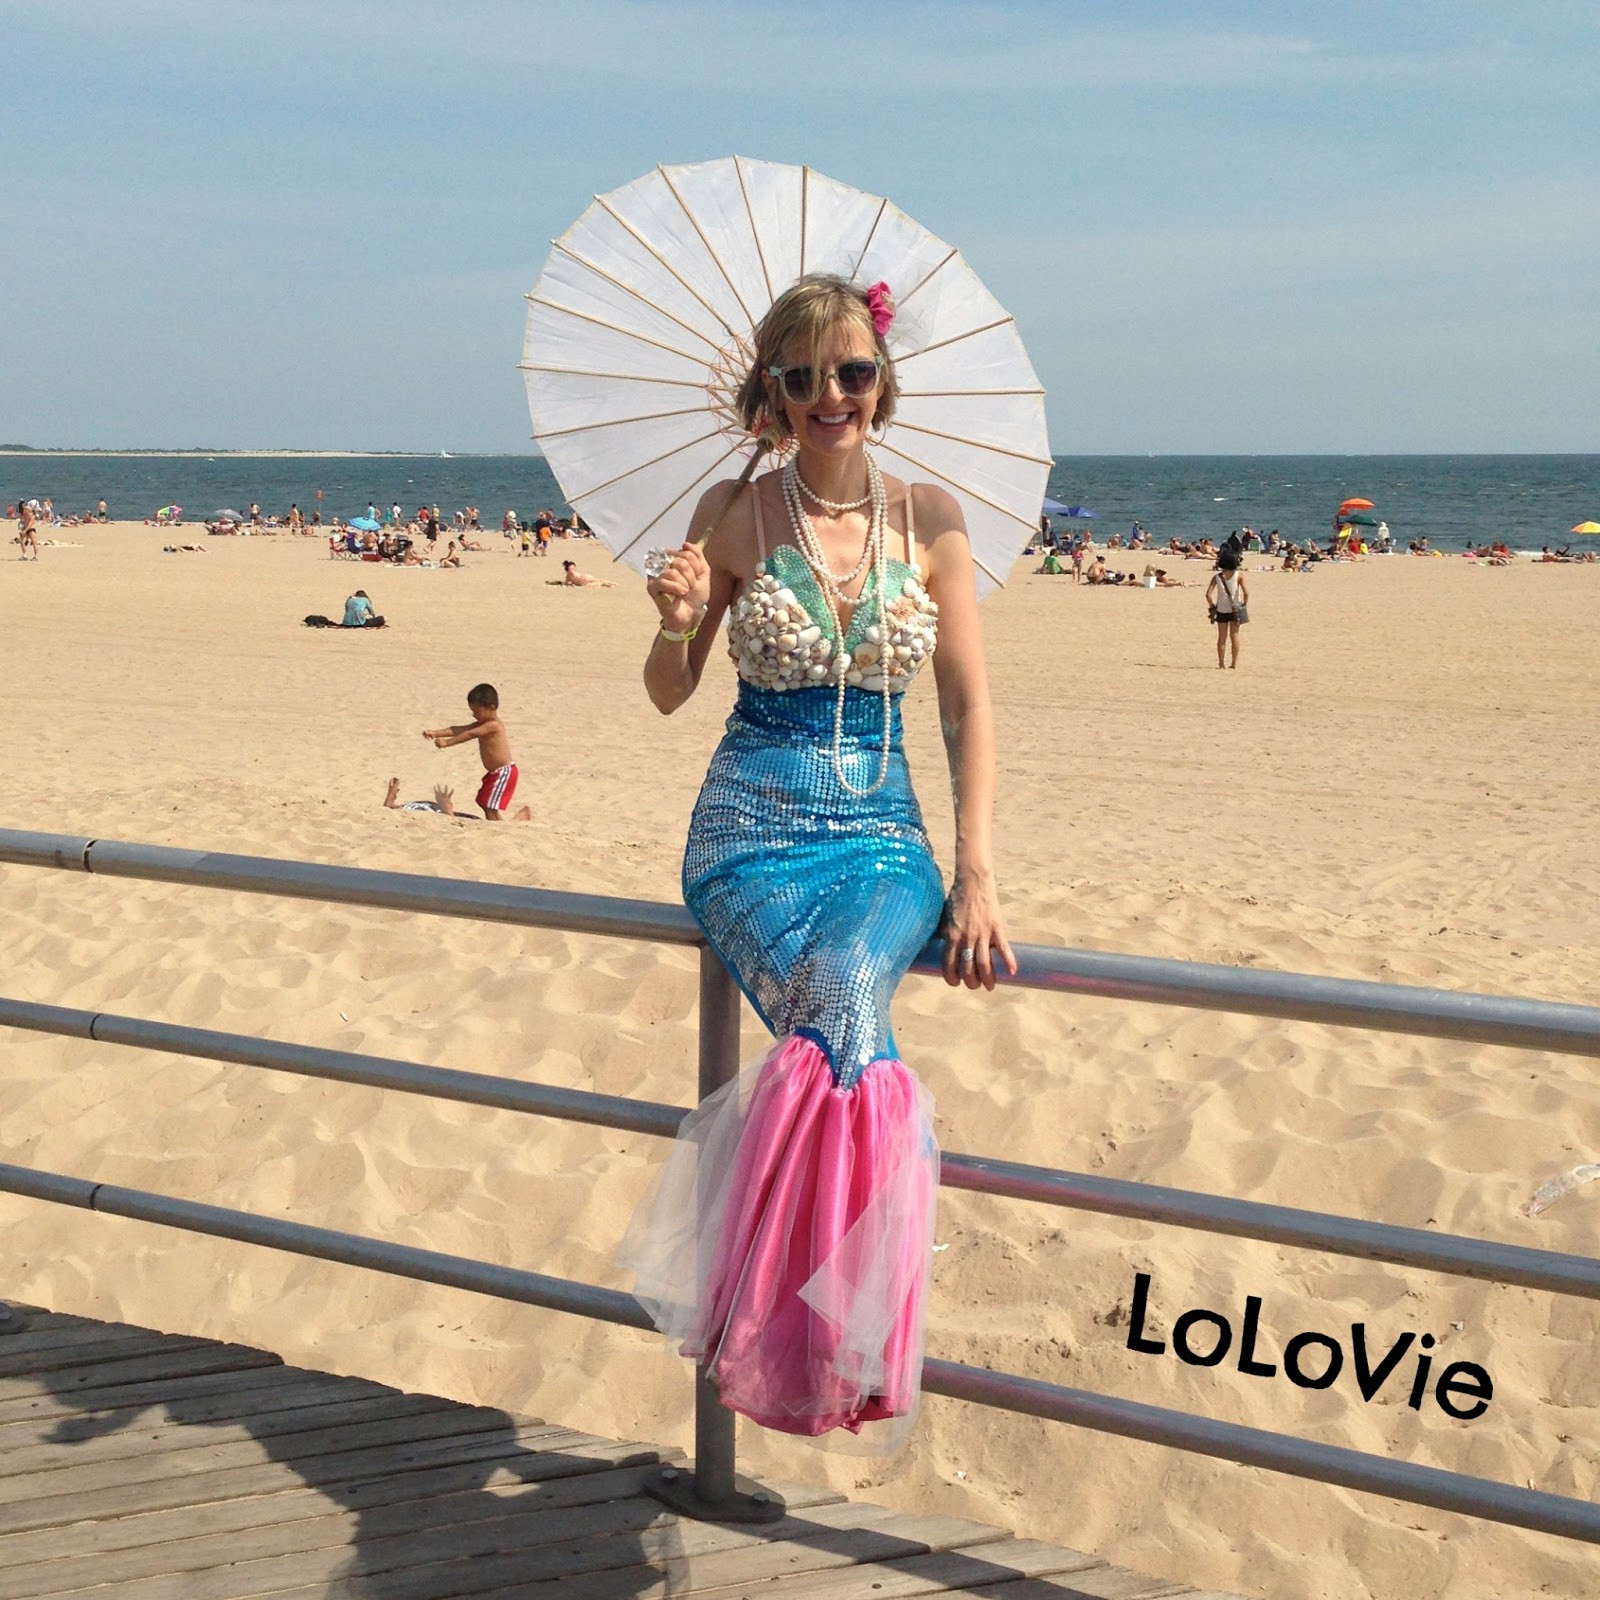 Best ideas about Mermaid Costumes DIY
. Save or Pin LoLovie Mermaid dress DIY Now.